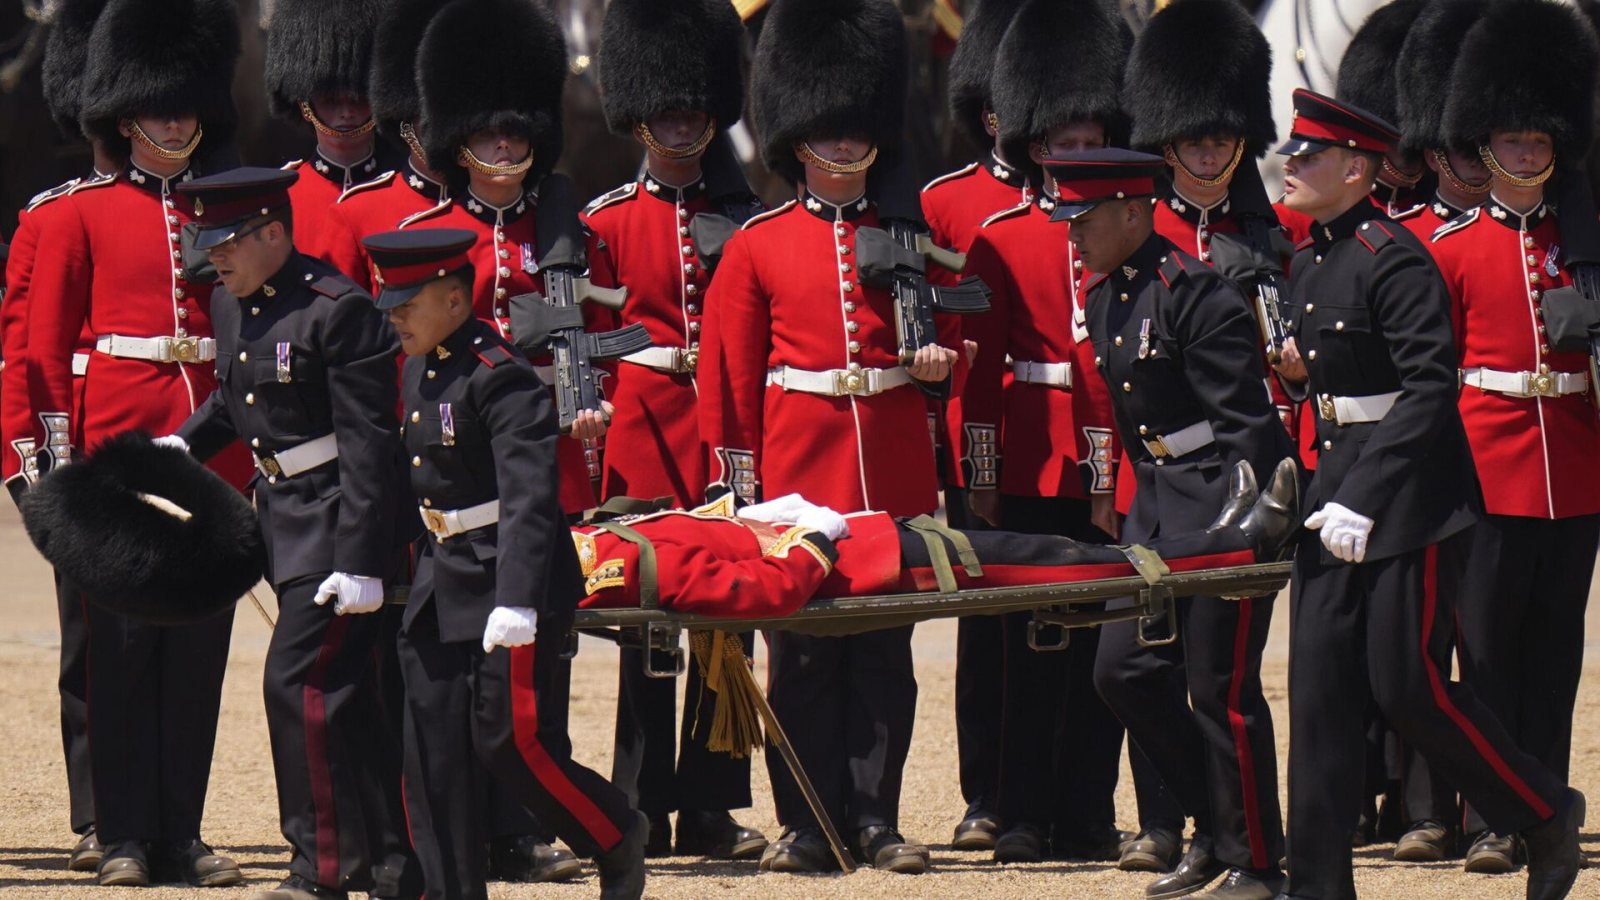 Përgatitjet për paradën e ditëlindjes së mbretit, ushtarëve anglezë u bie të fikët nga i nxehti